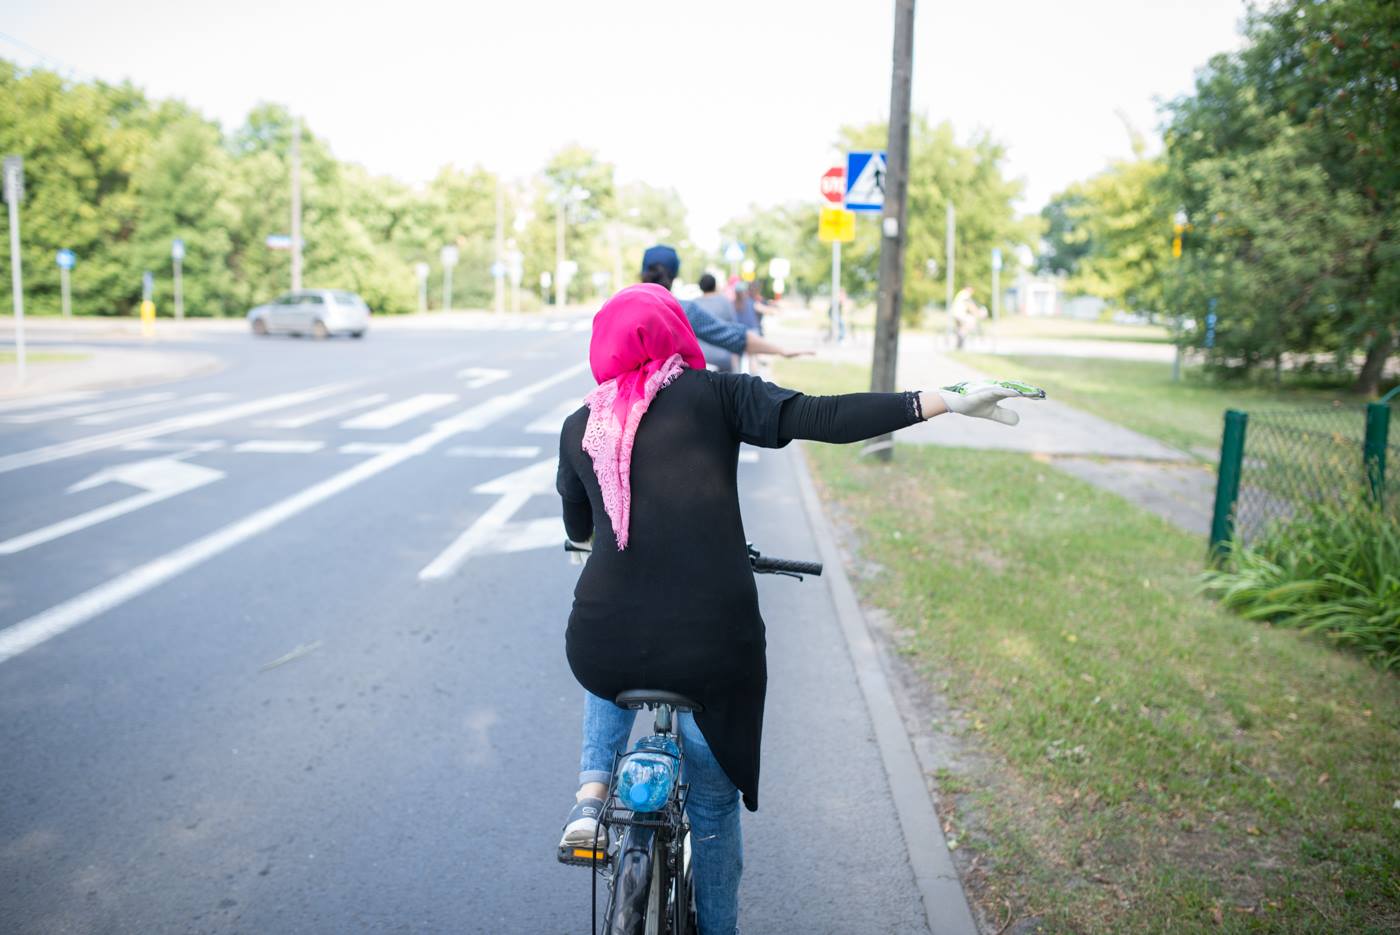 Na zdjęciu uchodźczyni na rowerze w chuście, wyciągająca prawą rękę sygnalizując zamiar skrętu w prawo